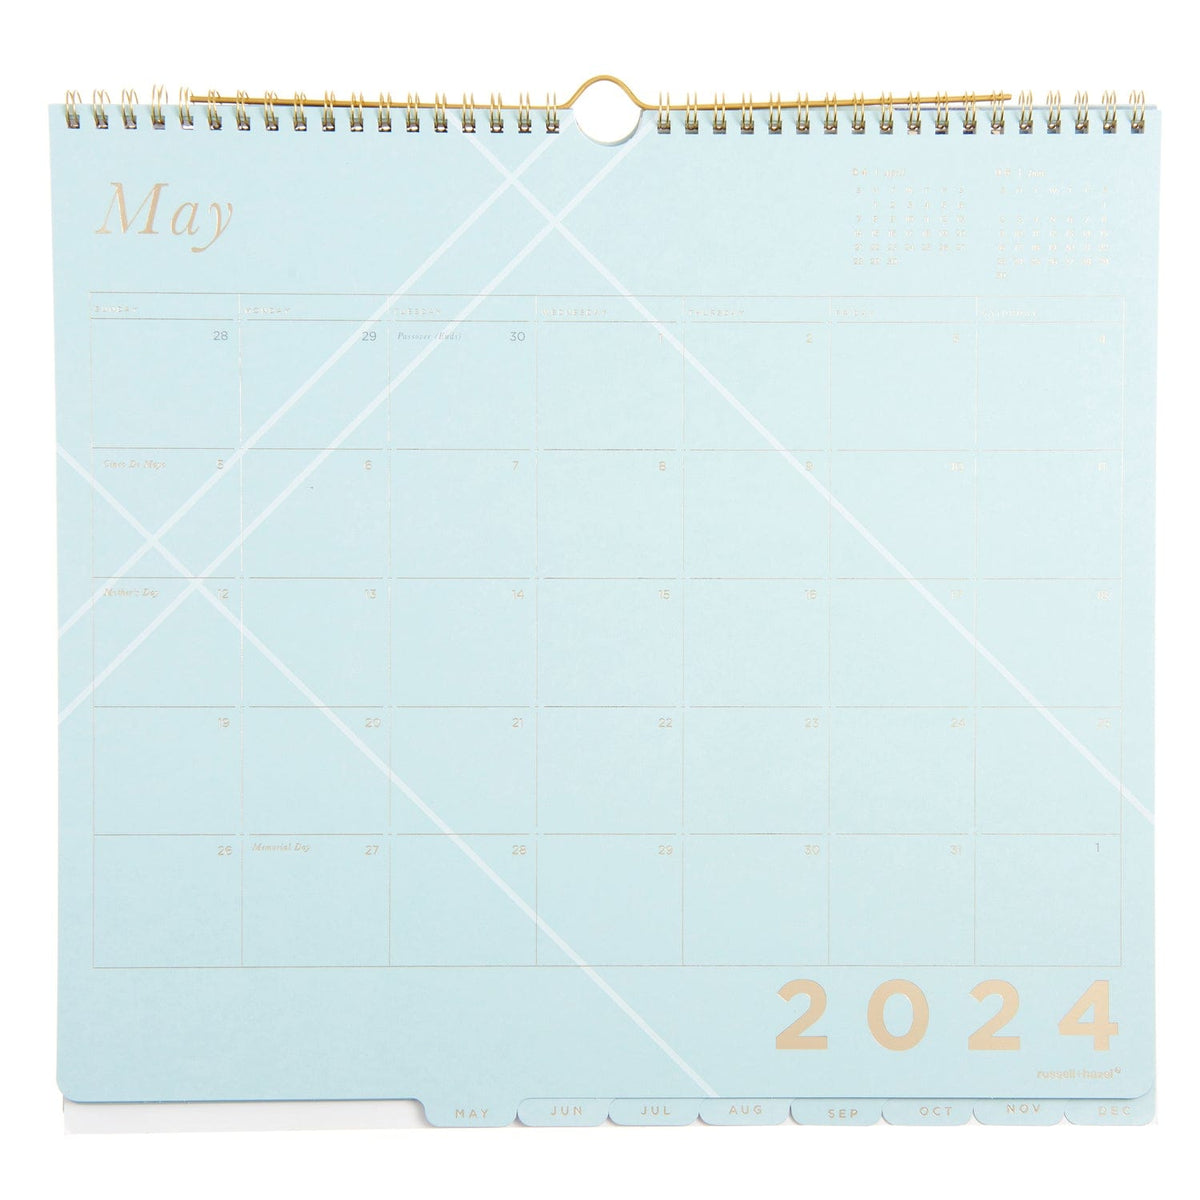 Blue Blocks - Wall Calendar 61730 russell+hazel Calendar